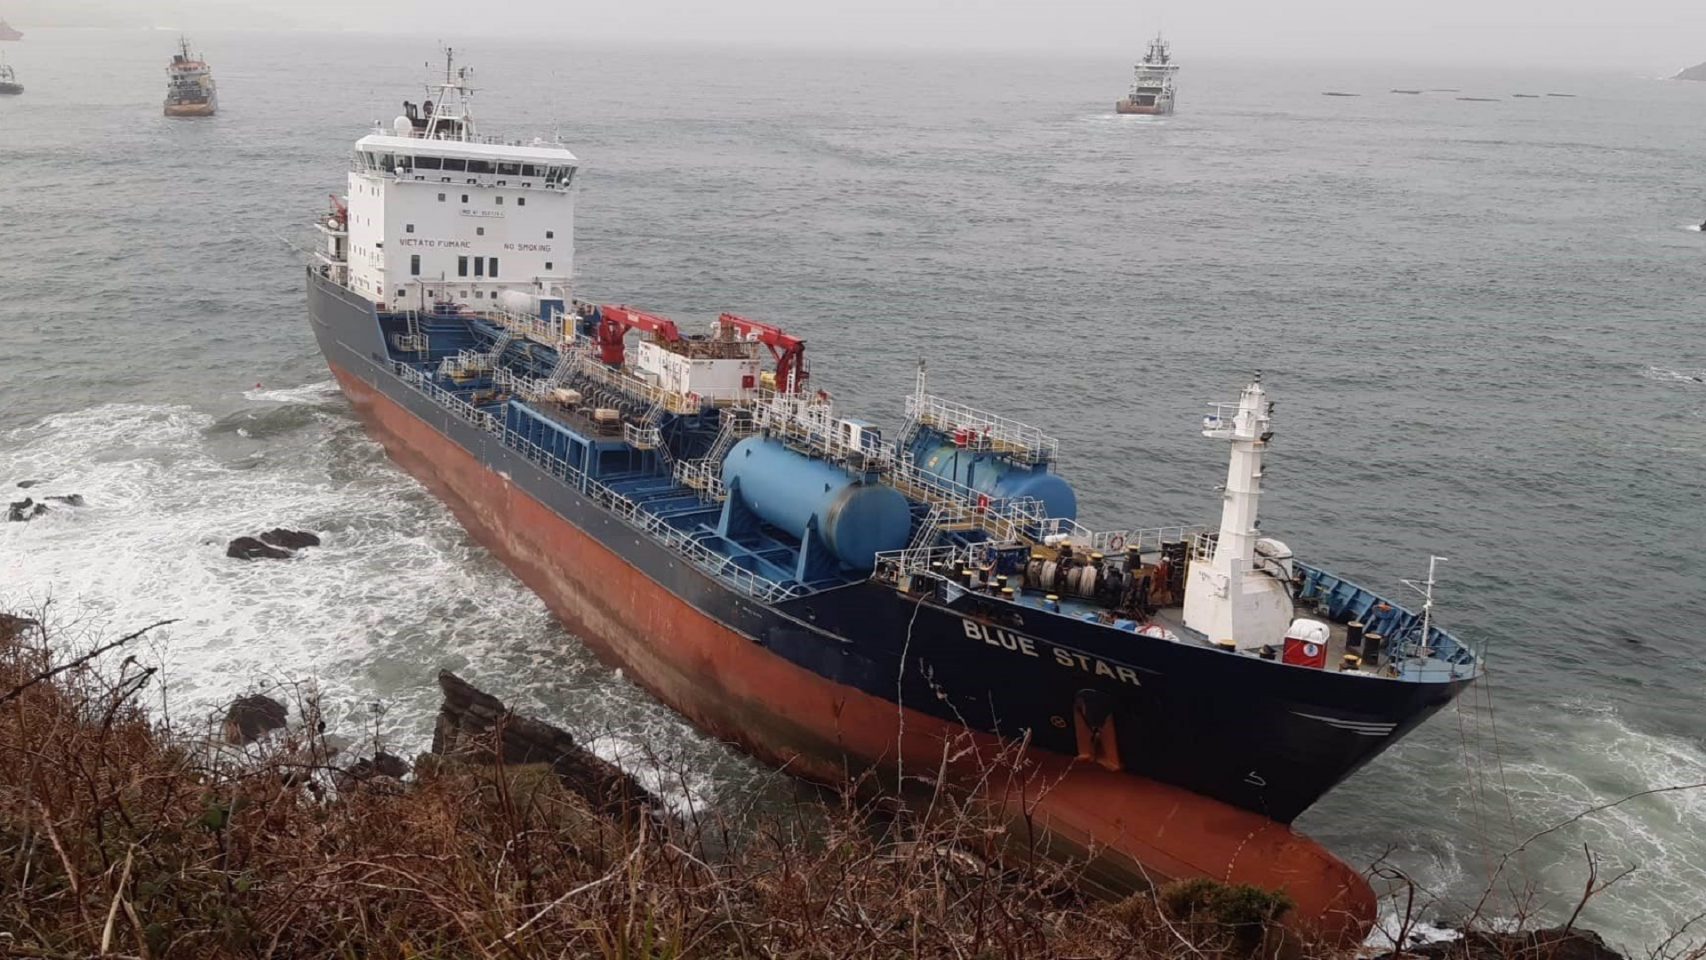 Trabajos para desencallar el buque 'Blue Star' en la costa de Ares (A Coruña).